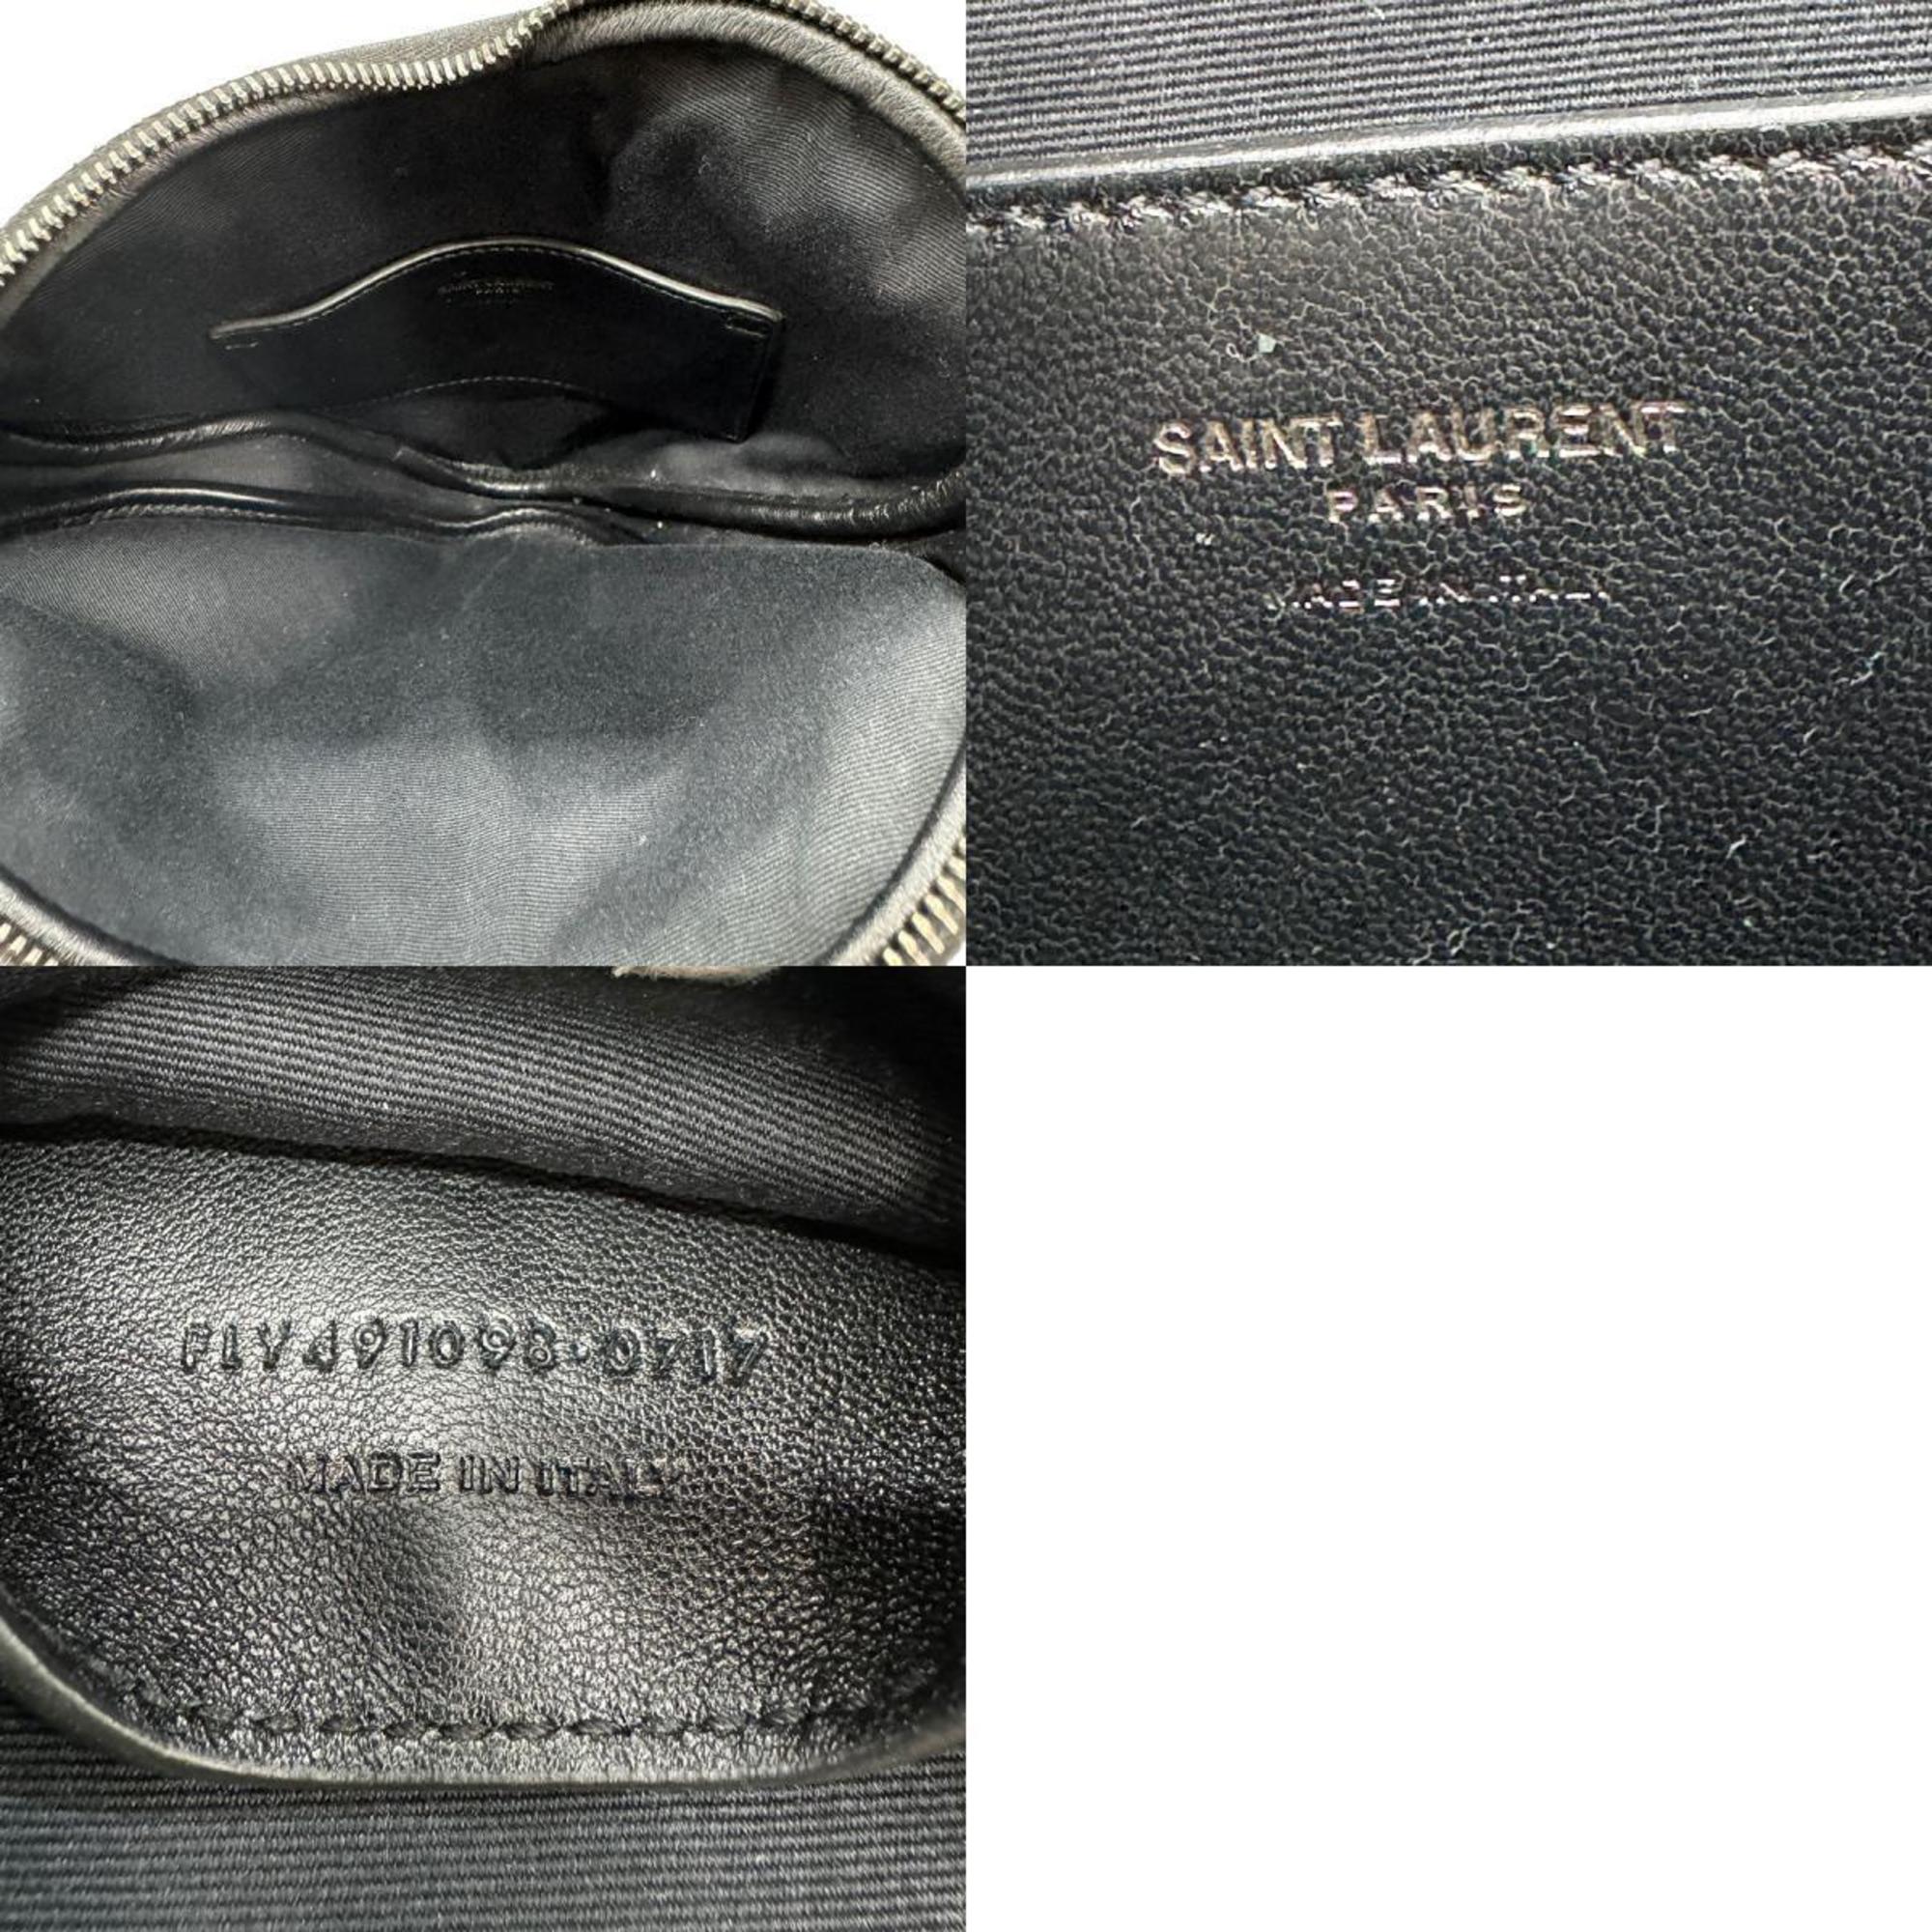 Saint Laurent Clutch Bag Leather Black x Blue Women's z0619